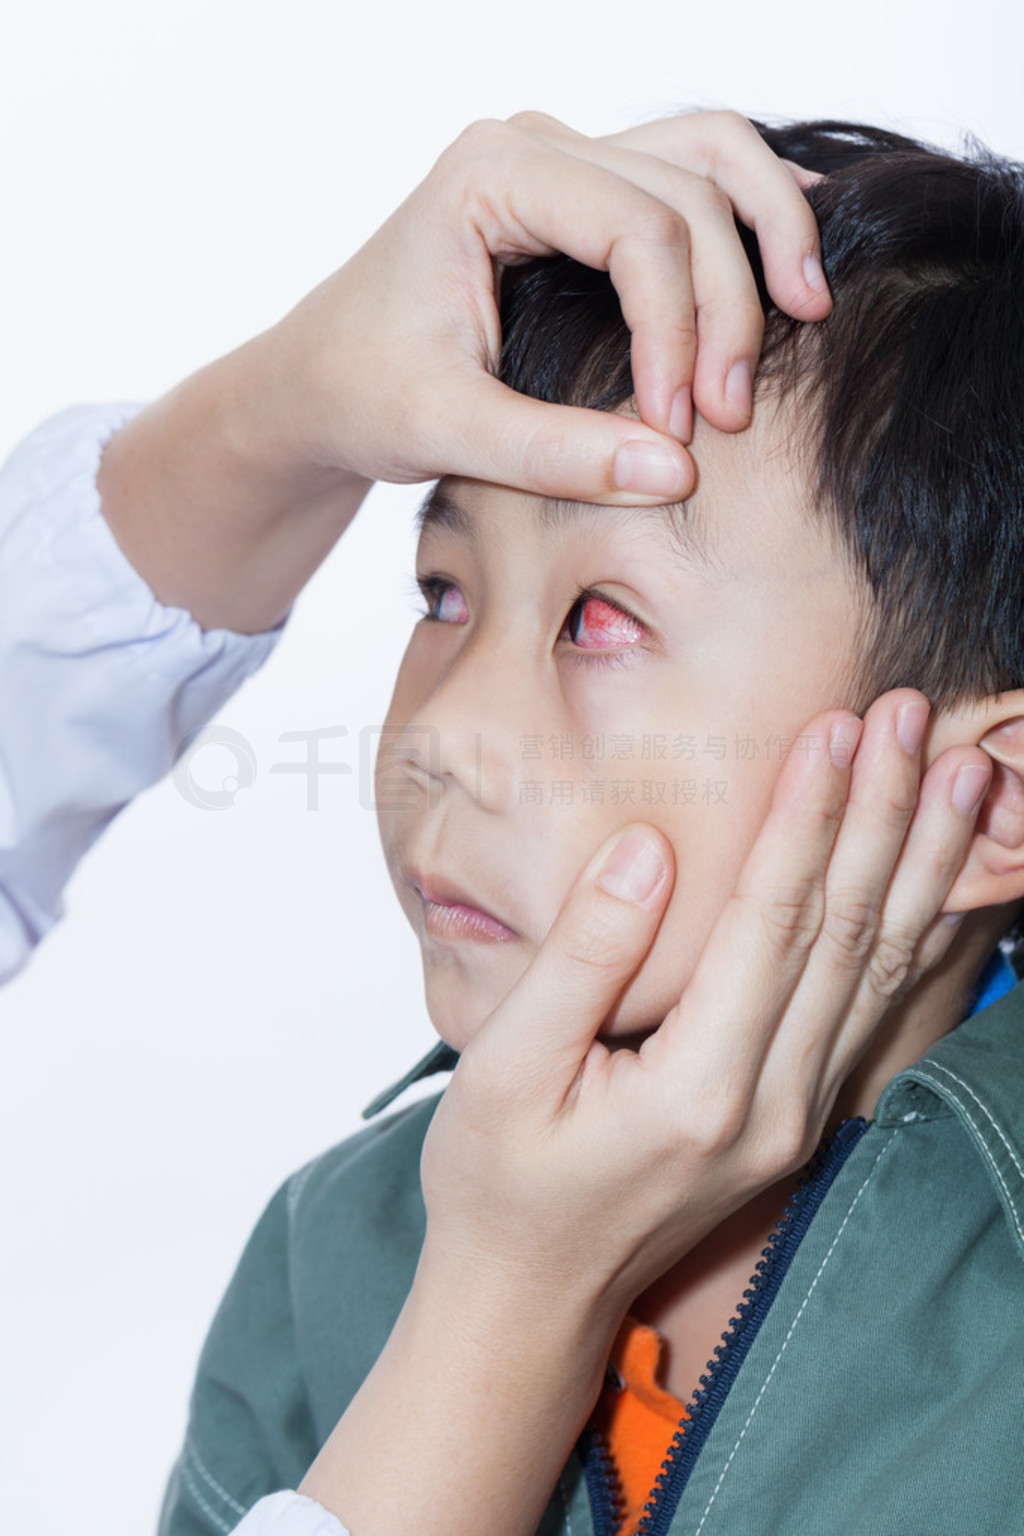 黄斑是个啥？听说高度近视患者更容易出现黄斑病变是真的吗？|黄斑|高度近视|病变_新浪新闻